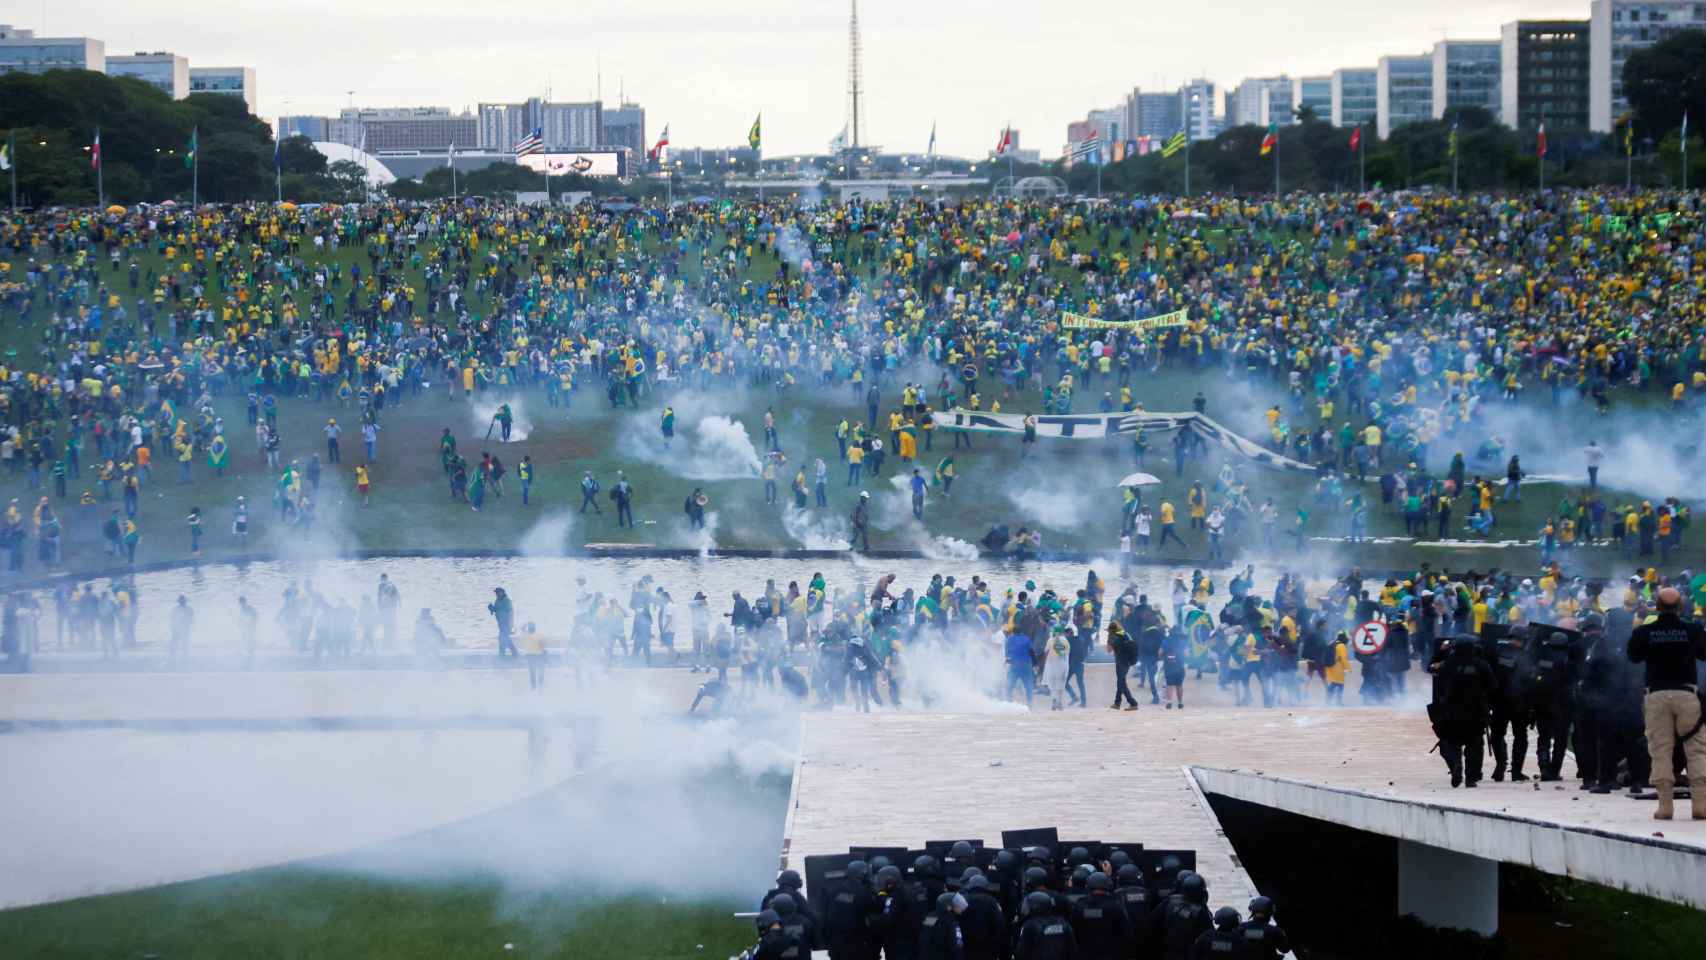 Imagen que ilustra el caos vivido este domingo en Brasilia por el asalto de los 'bolsonaristas' a las instituciones .